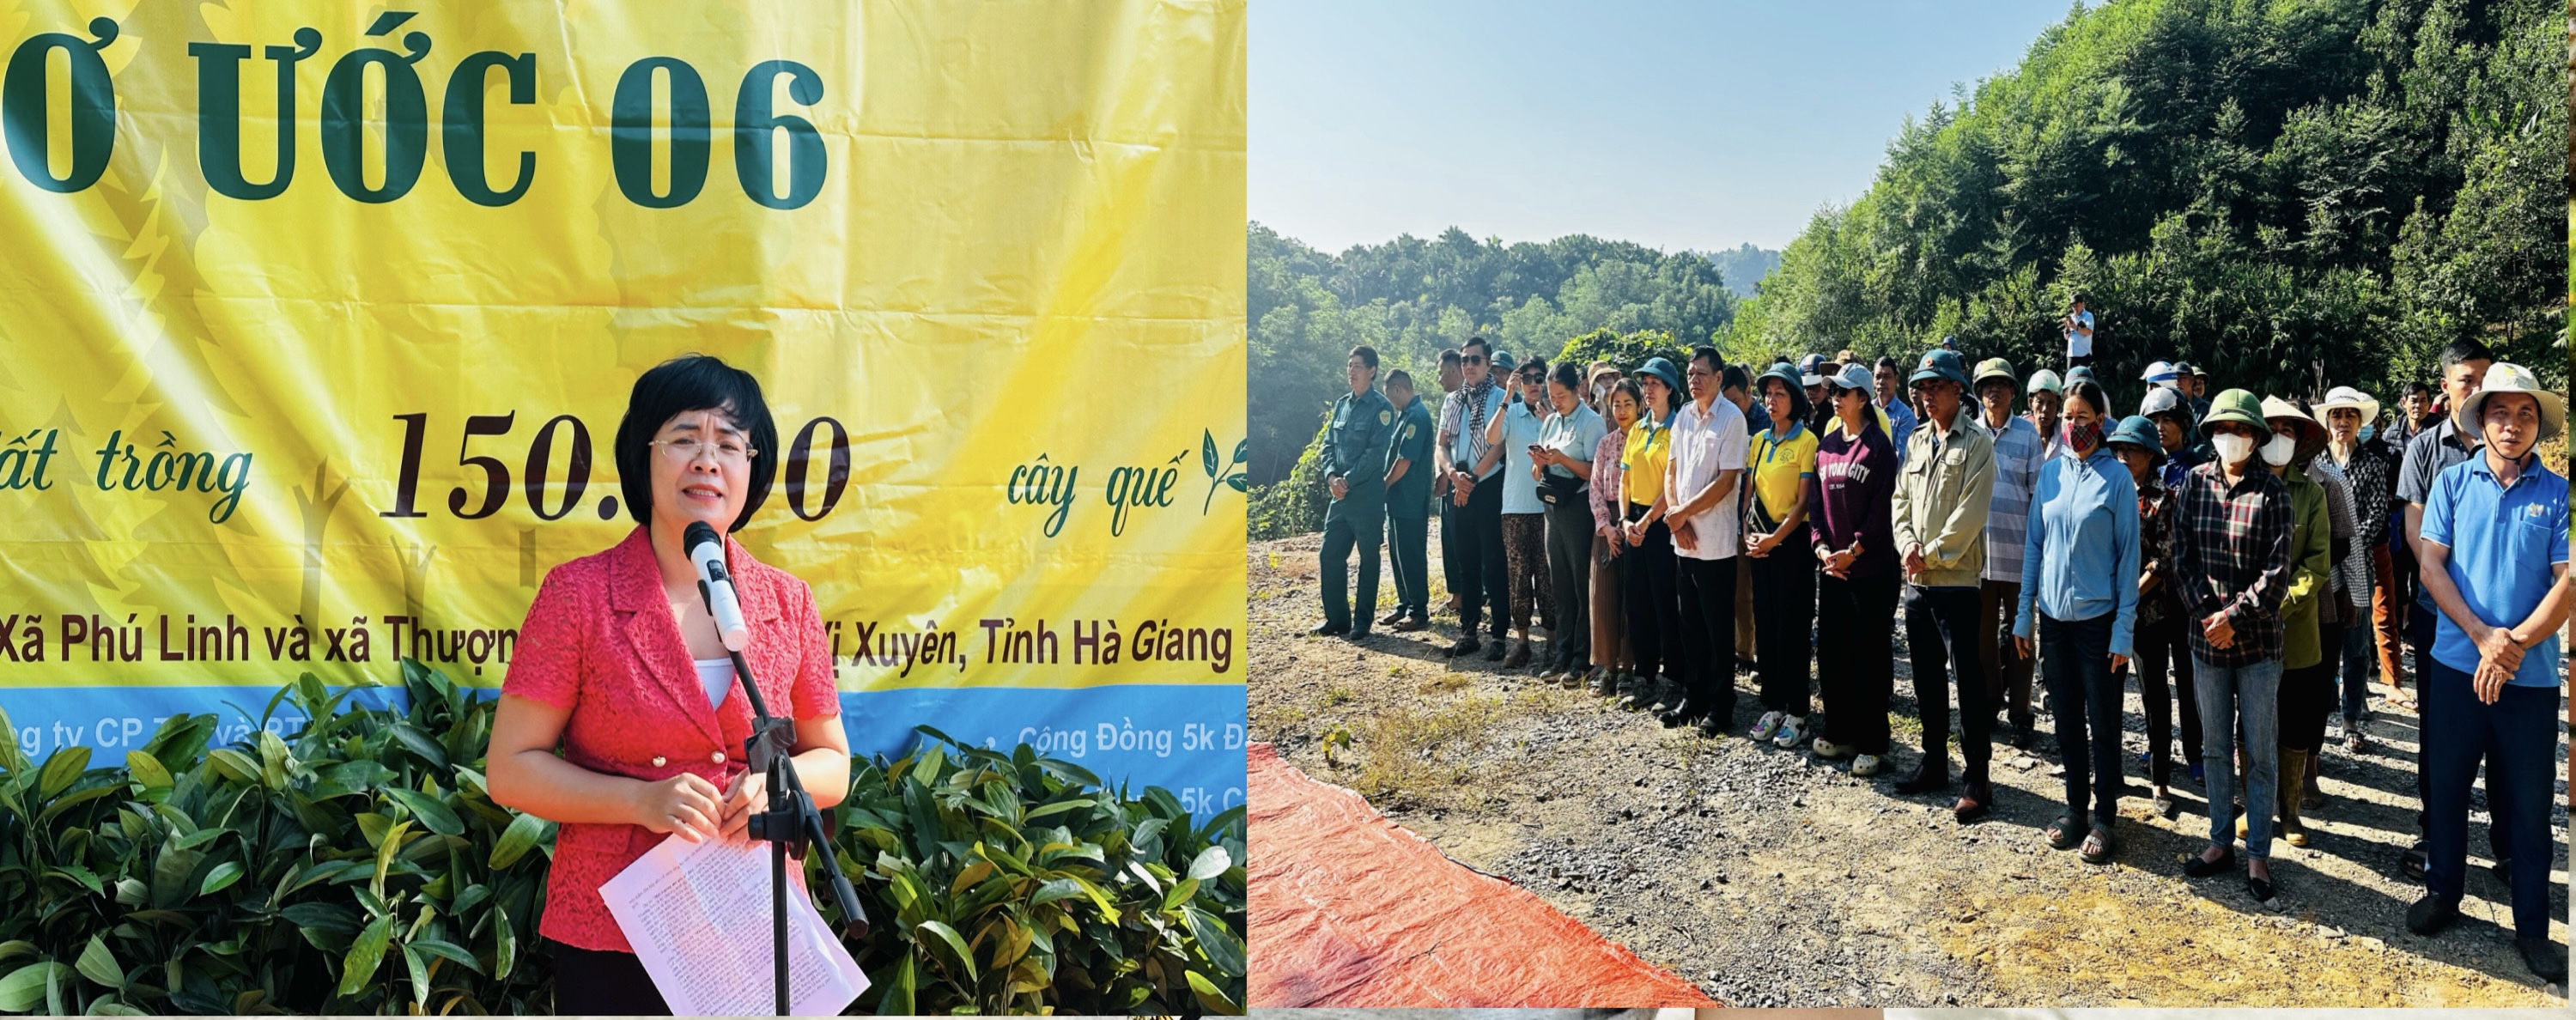 Chương trình “Môi trường mơ ước 6” tại xã Phú Linh và Thượng Sơn